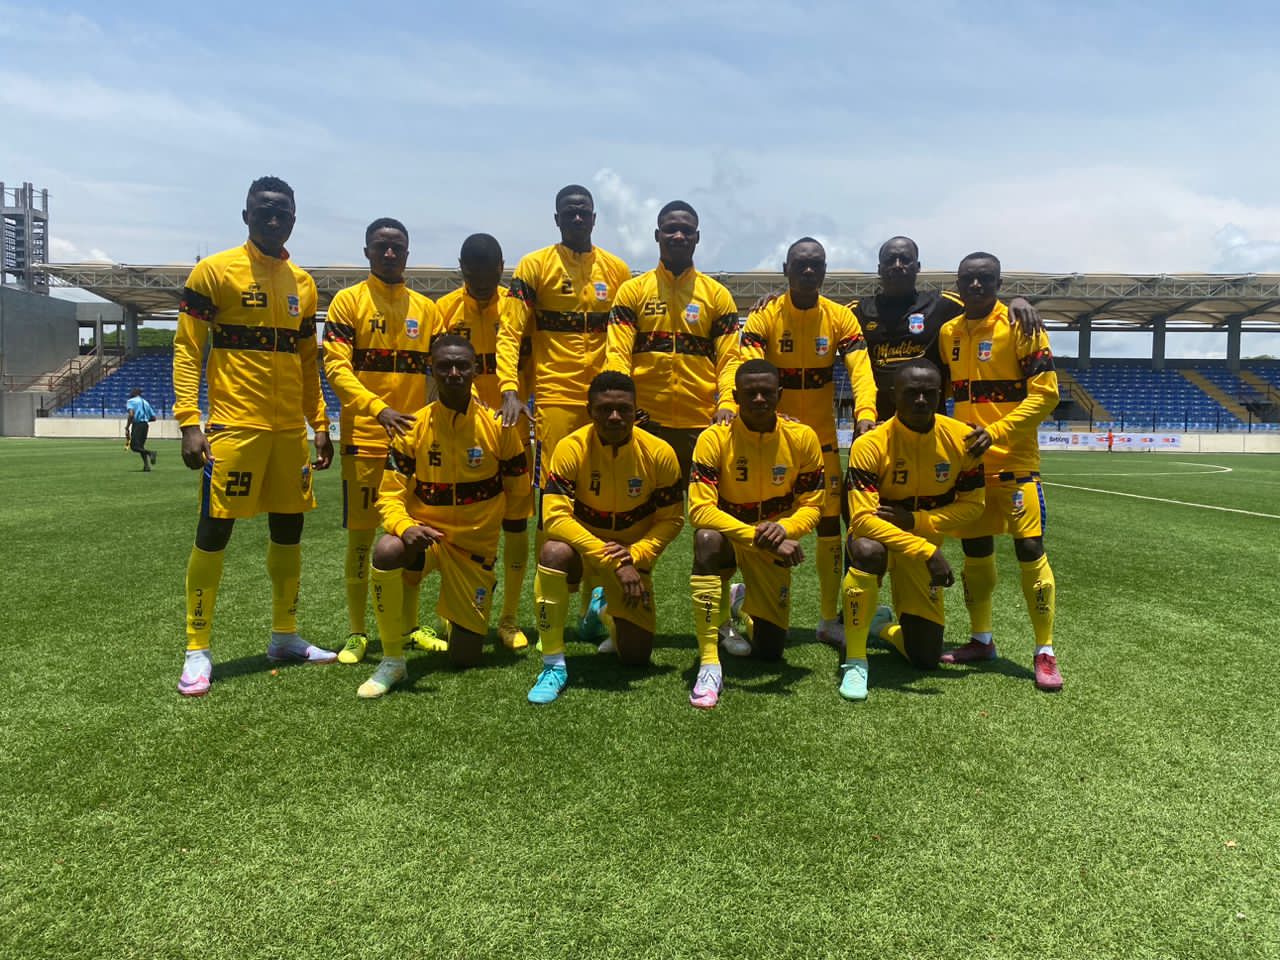 NNL 新秀 Madiba FC 在联赛揭幕战中击败 Ekiti United